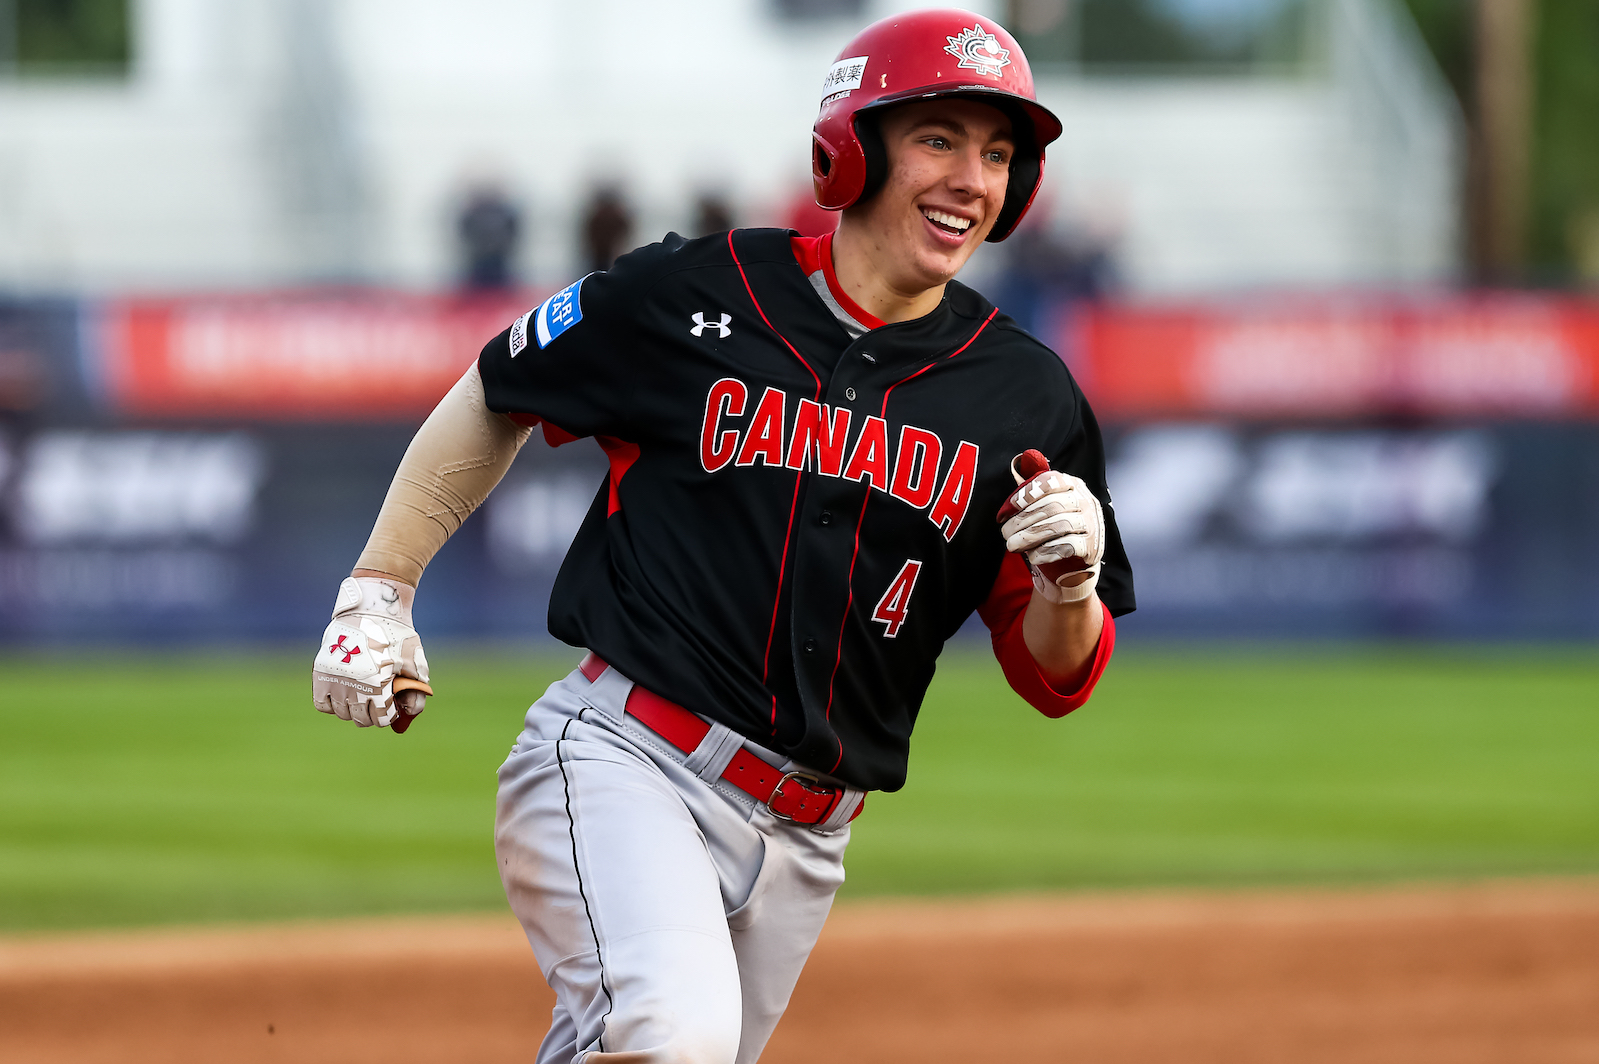 Coupe du monde junior : Le Canada dans la Super ronde après une victoire contre le Nicaragua